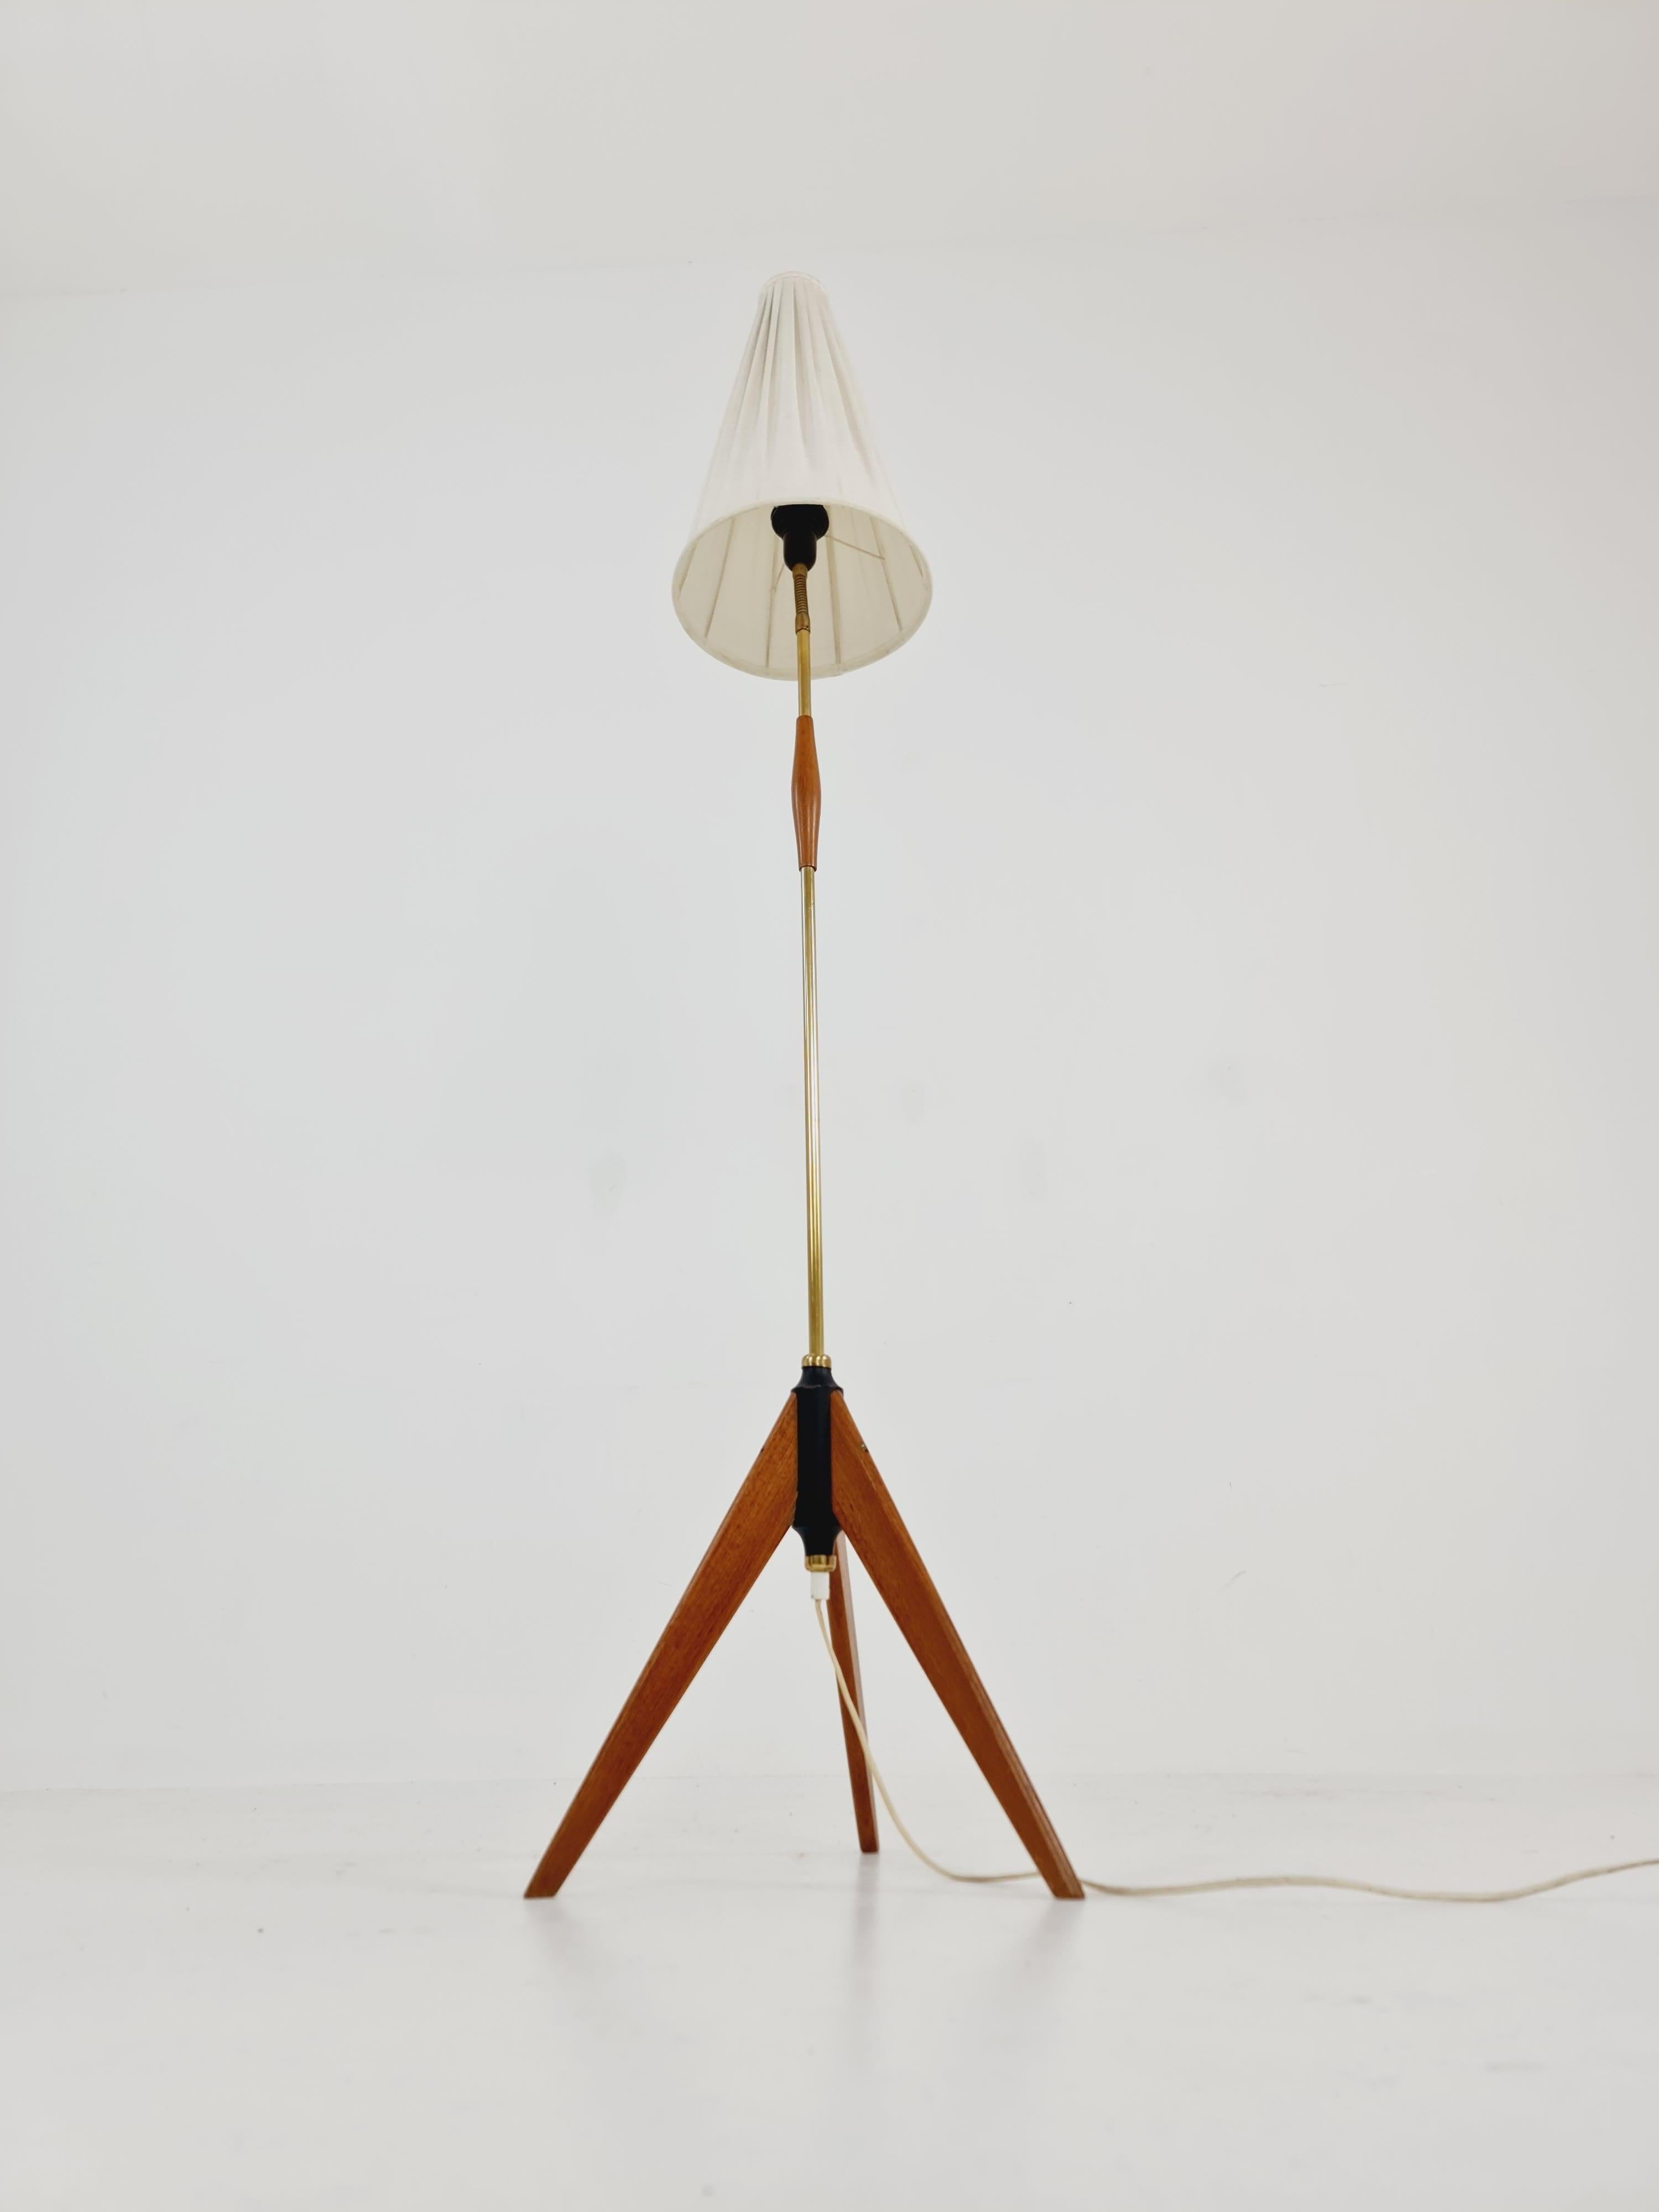 Lampadaire tripode en laiton et teck Scandinave par Örsjö Armatur, 1960s 

Abat-jour en tissu et pied de lampe en bois et détails en laiton. 

L'abat-jour original de la lampe est en très bon état.

Année de conception : 1950/60s

Dimensions de la